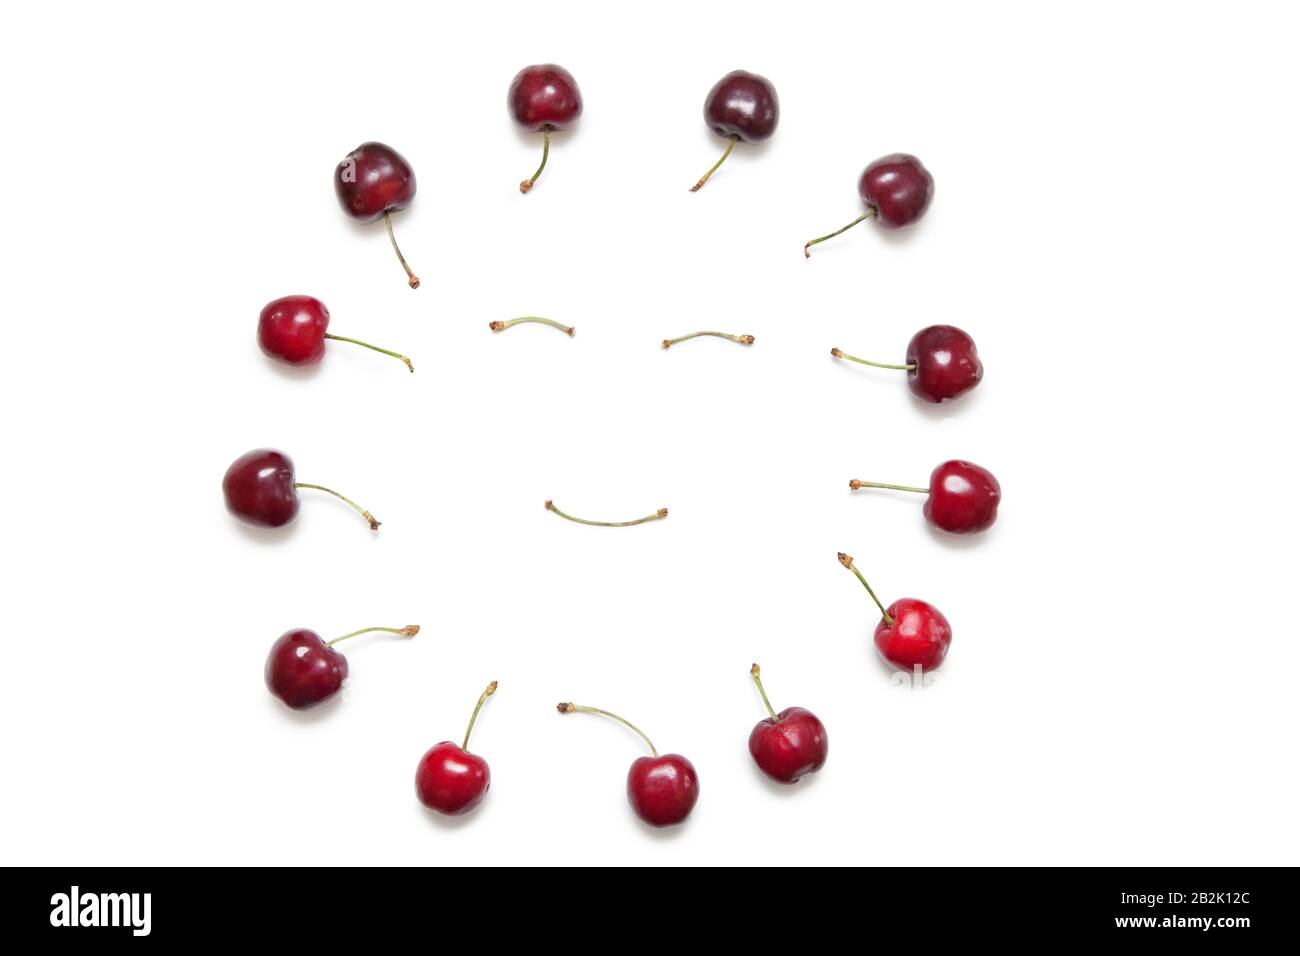 Kirschen rund um das Smiley-Gesicht von Stielen auf weißem Hintergrund Stockfoto